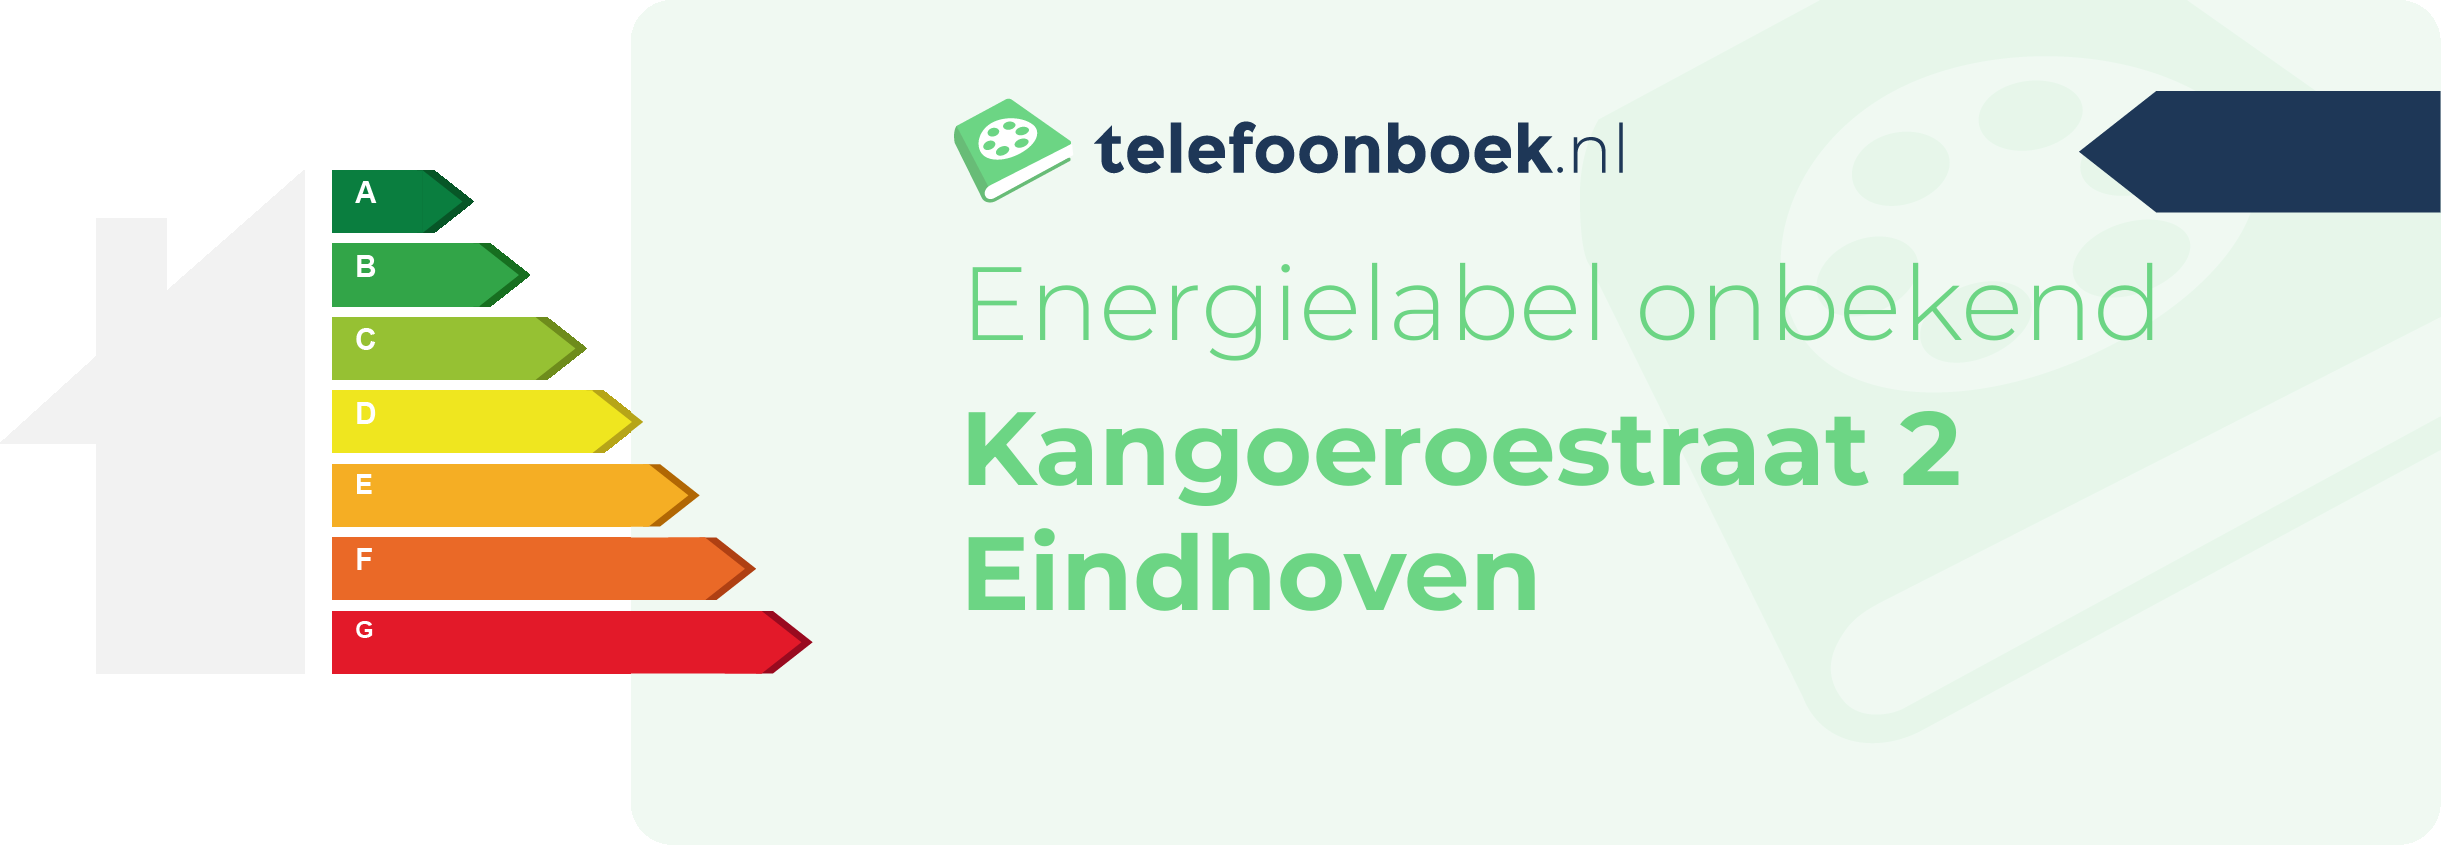 Energielabel Kangoeroestraat 2 Eindhoven